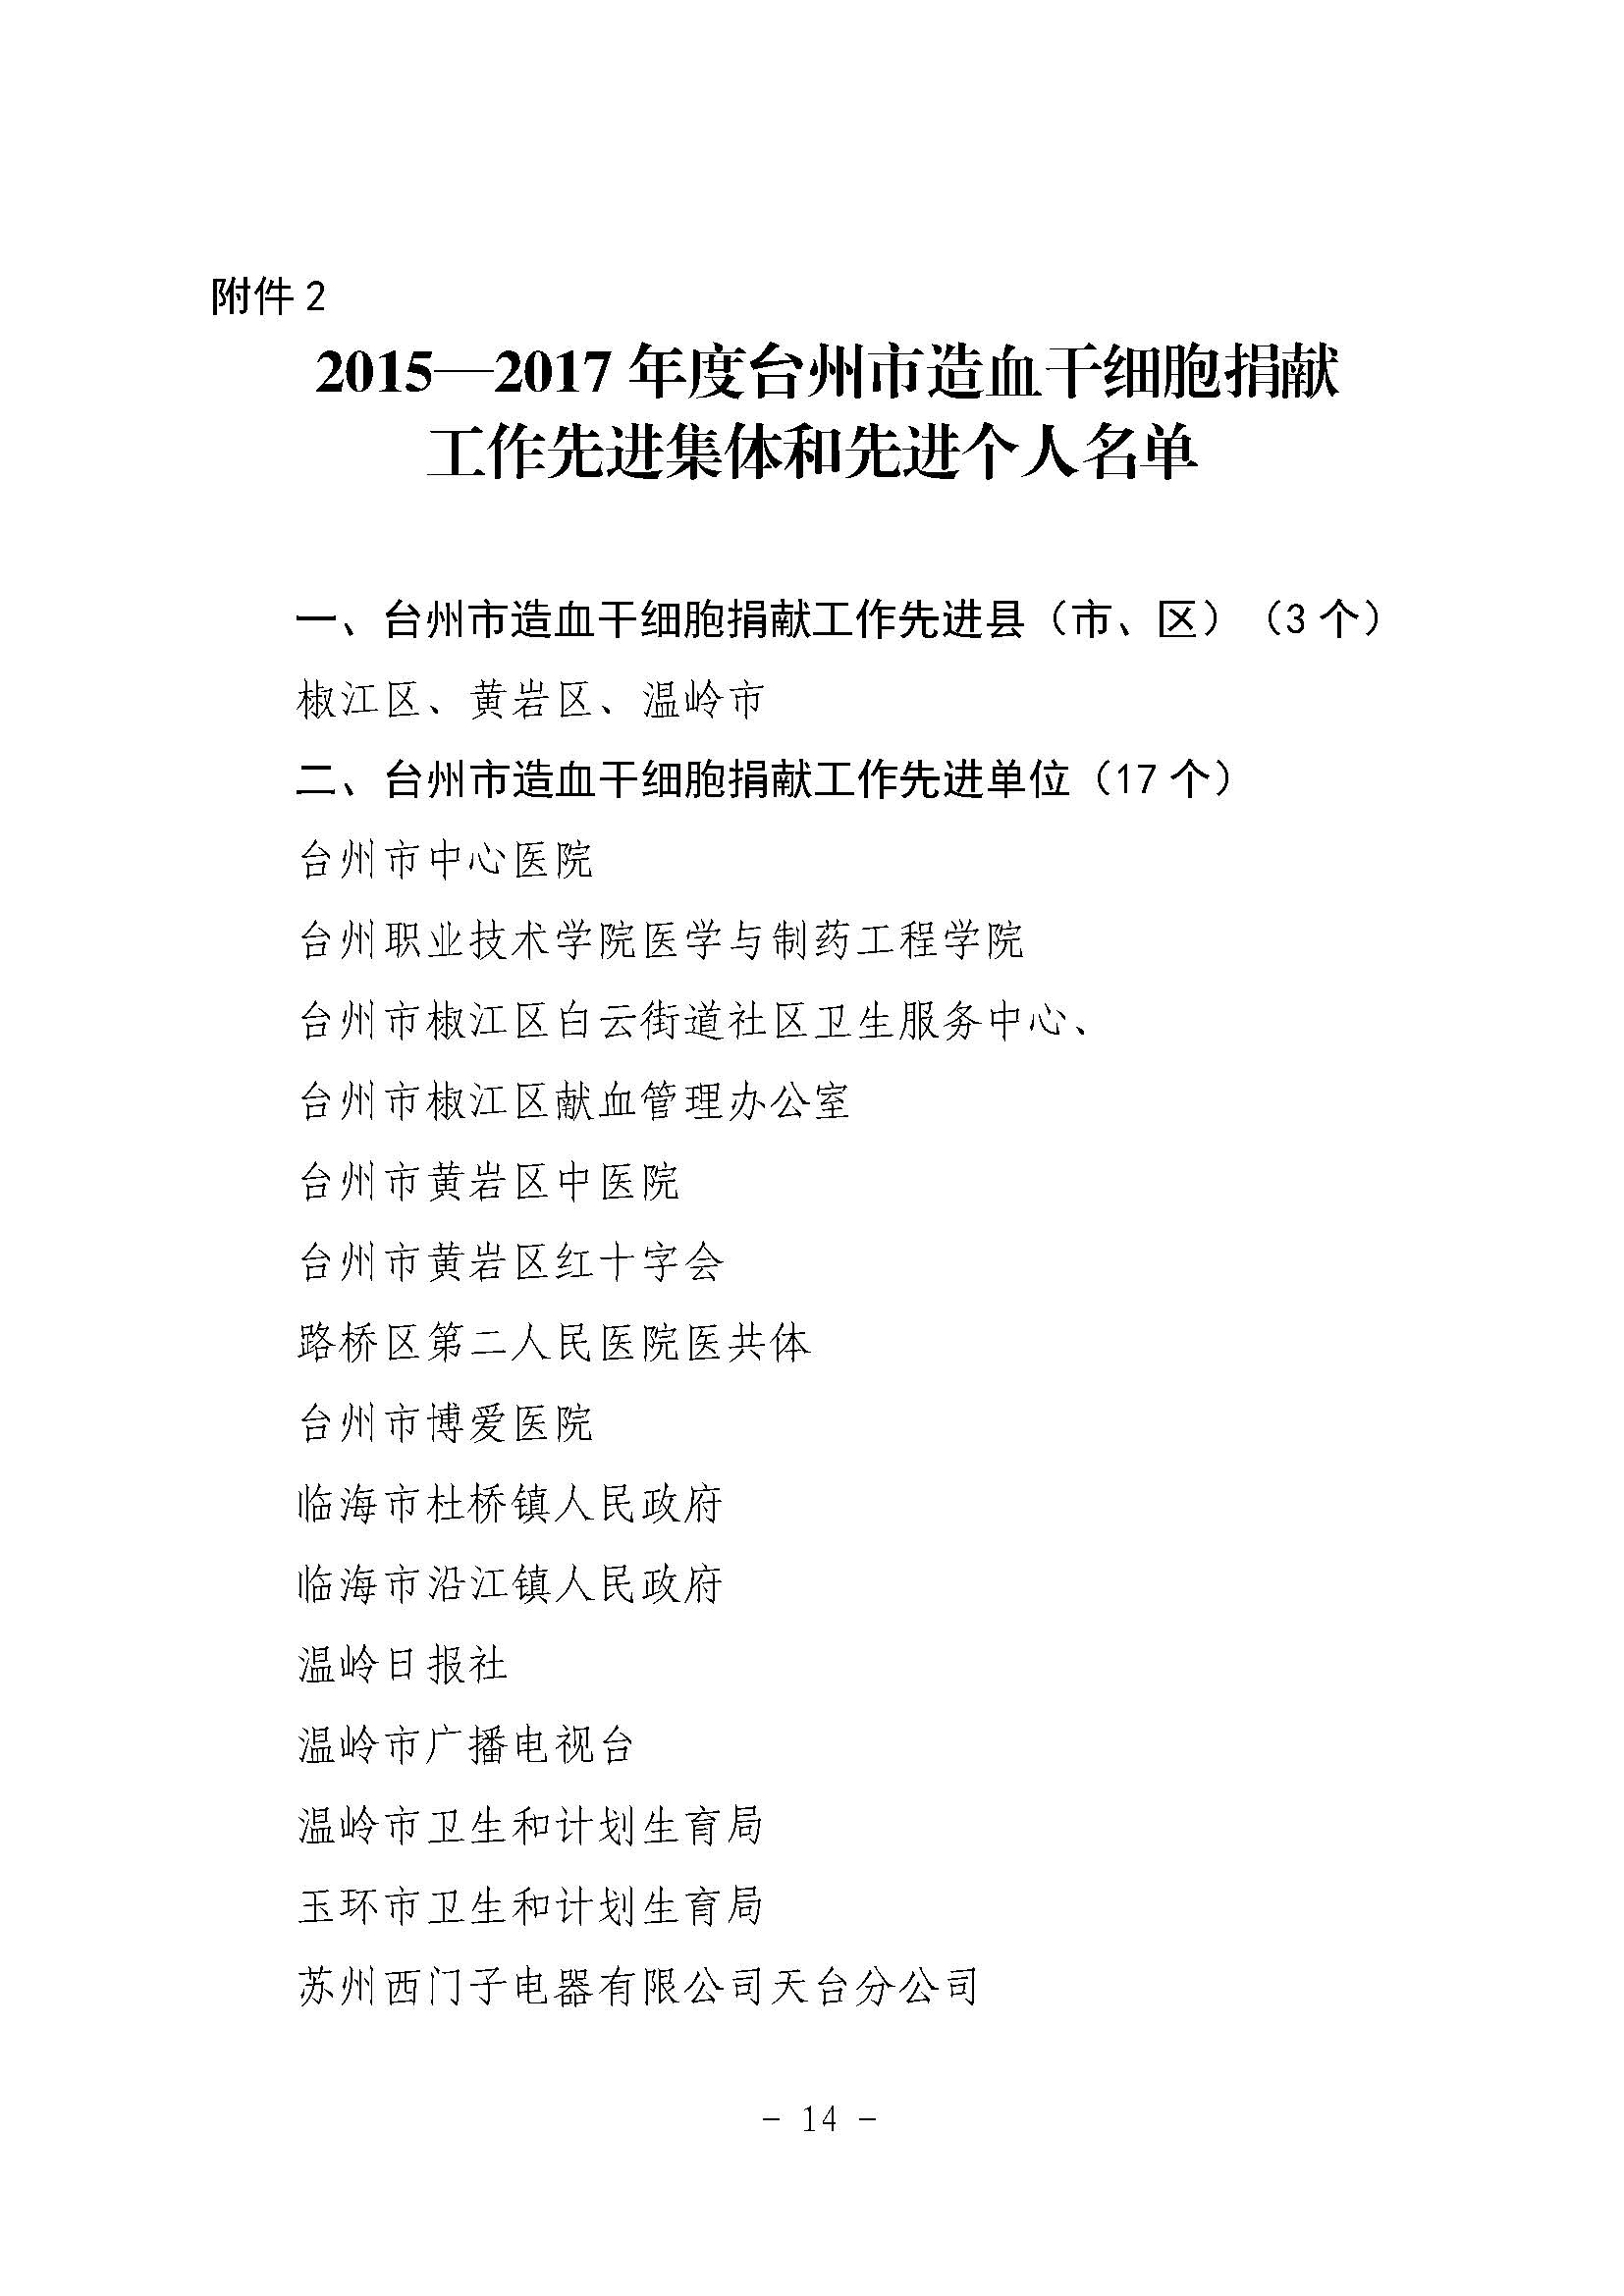 台献血字〔2018〕3号关于表扬2015—2017年度台州市无偿献血工作先进的通报（文件头）_页面_14.jpg